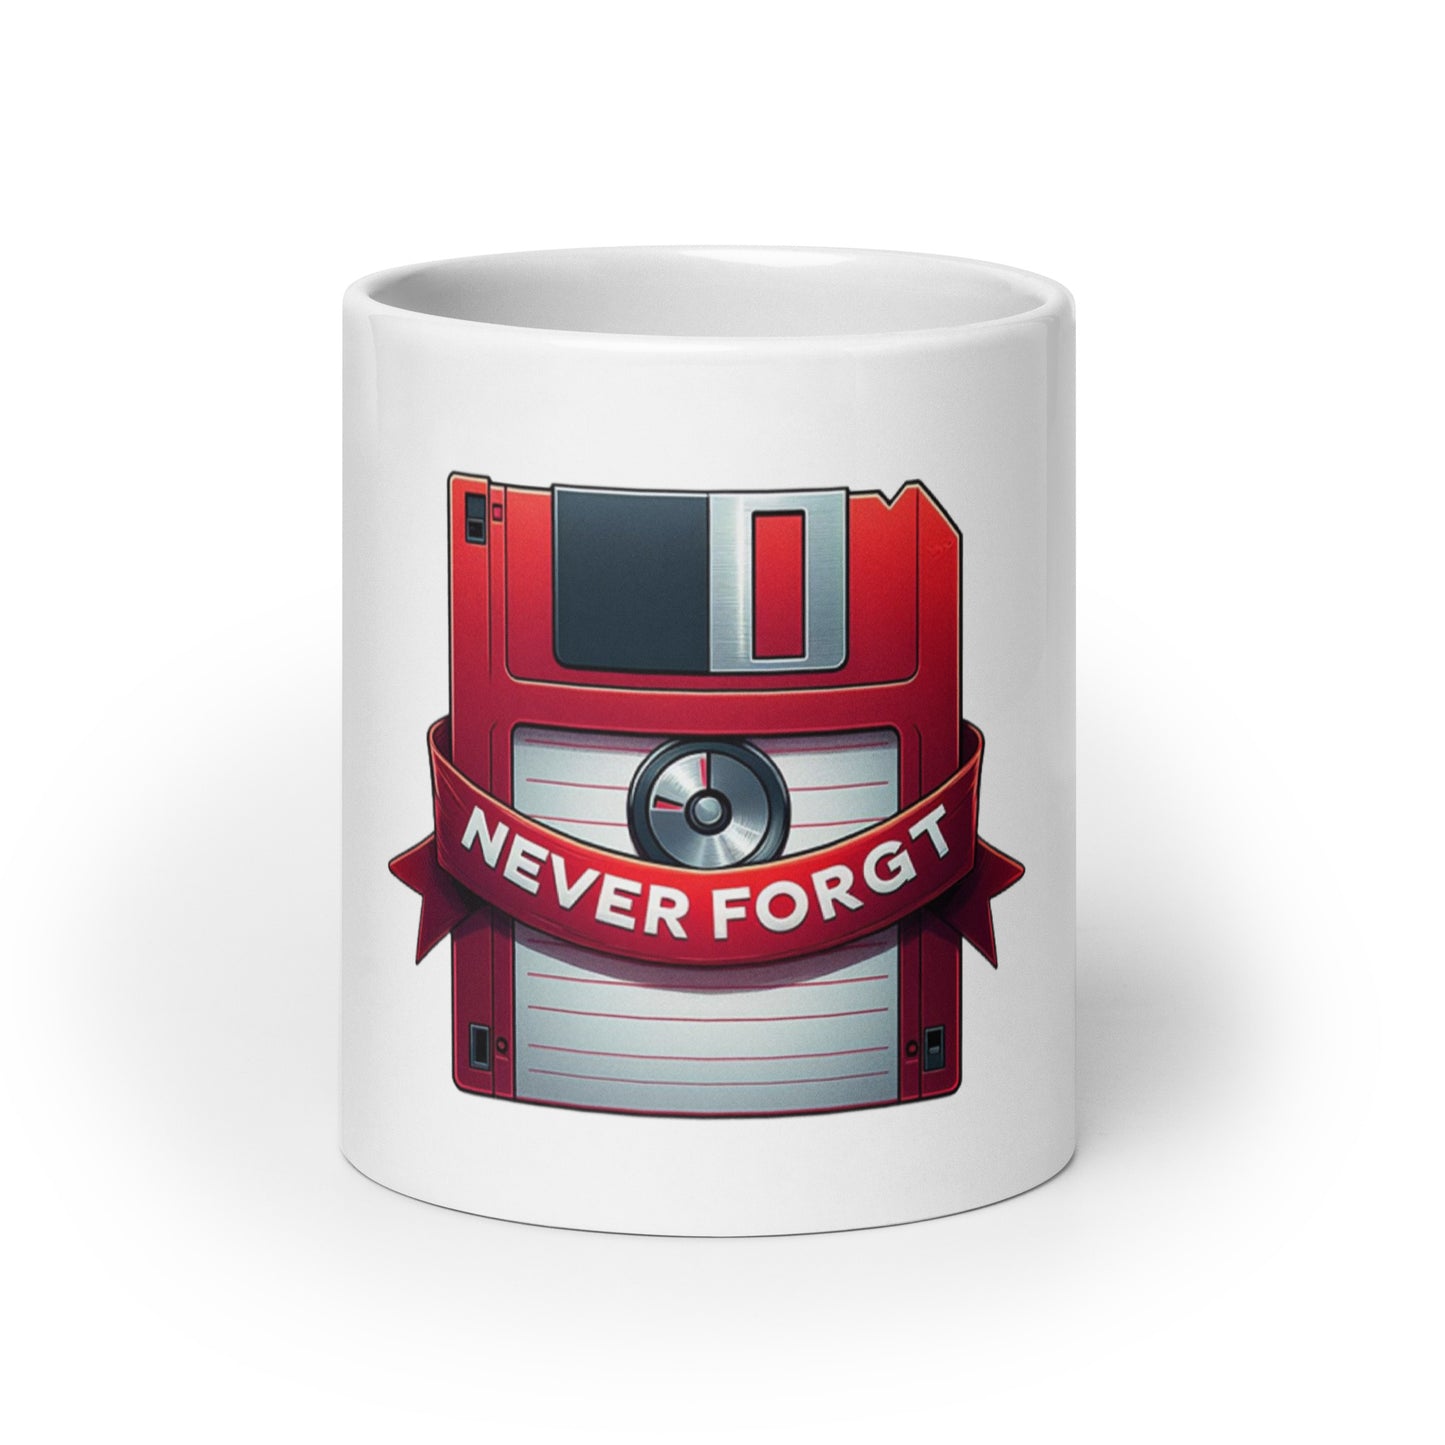 Never Forget mug